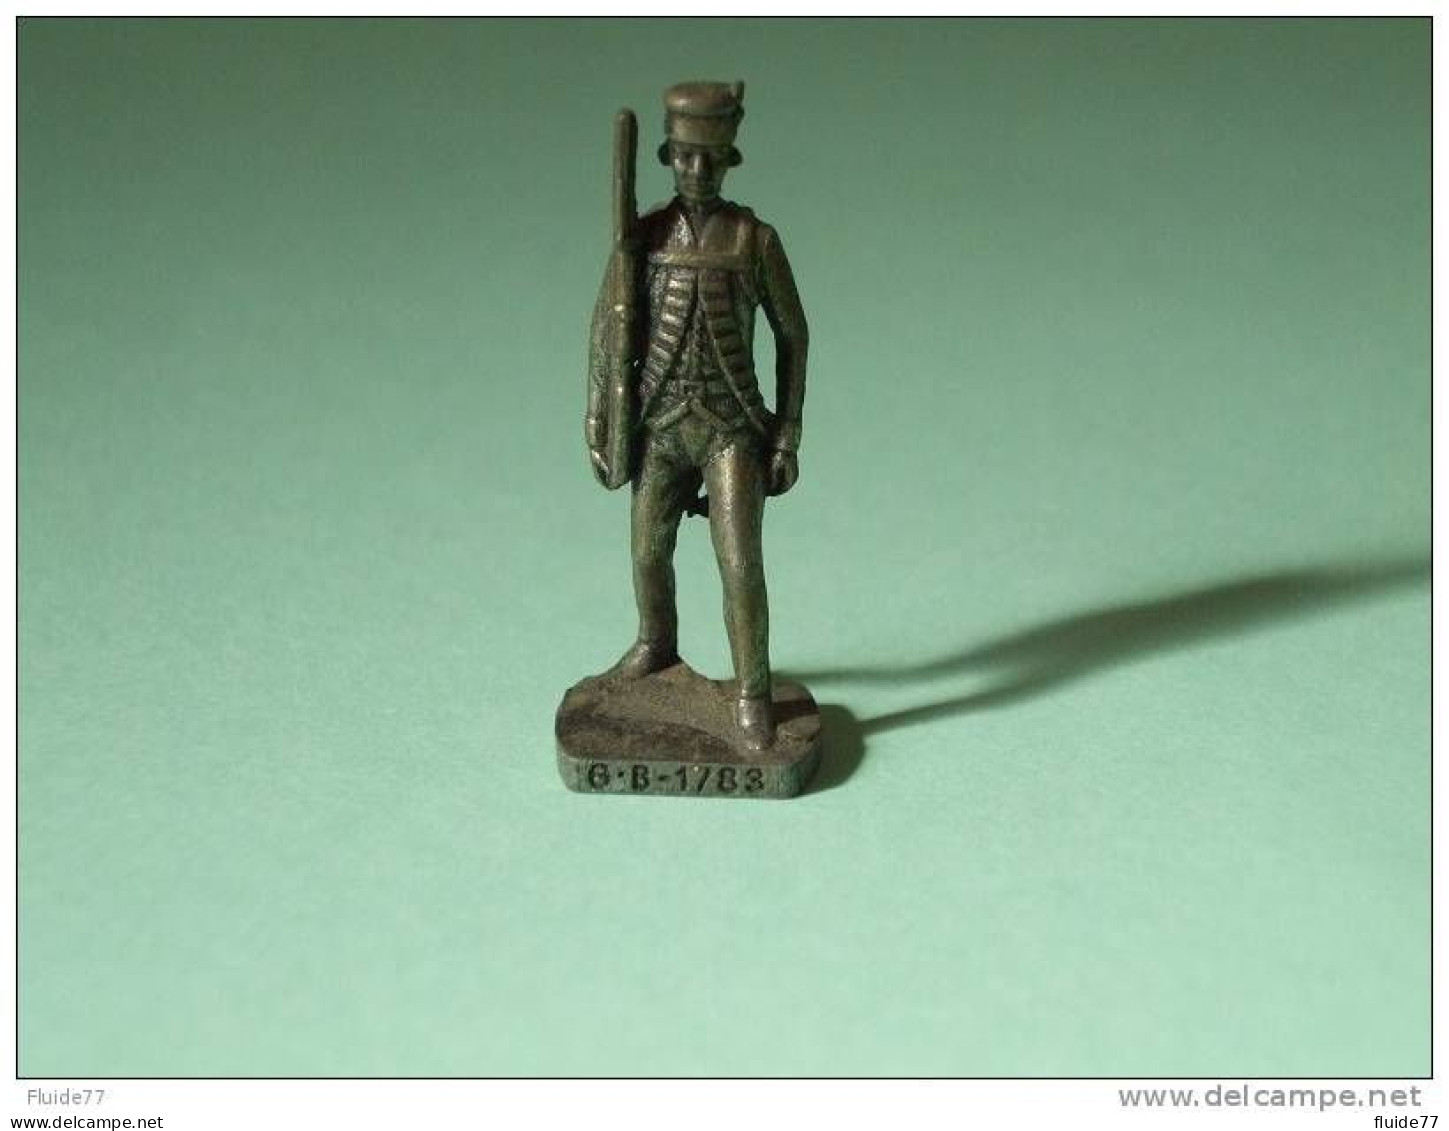 @ BRITANNIQUES De 1770 - Officier Commissionnaire  GB  1783 @ - Metal Figurines